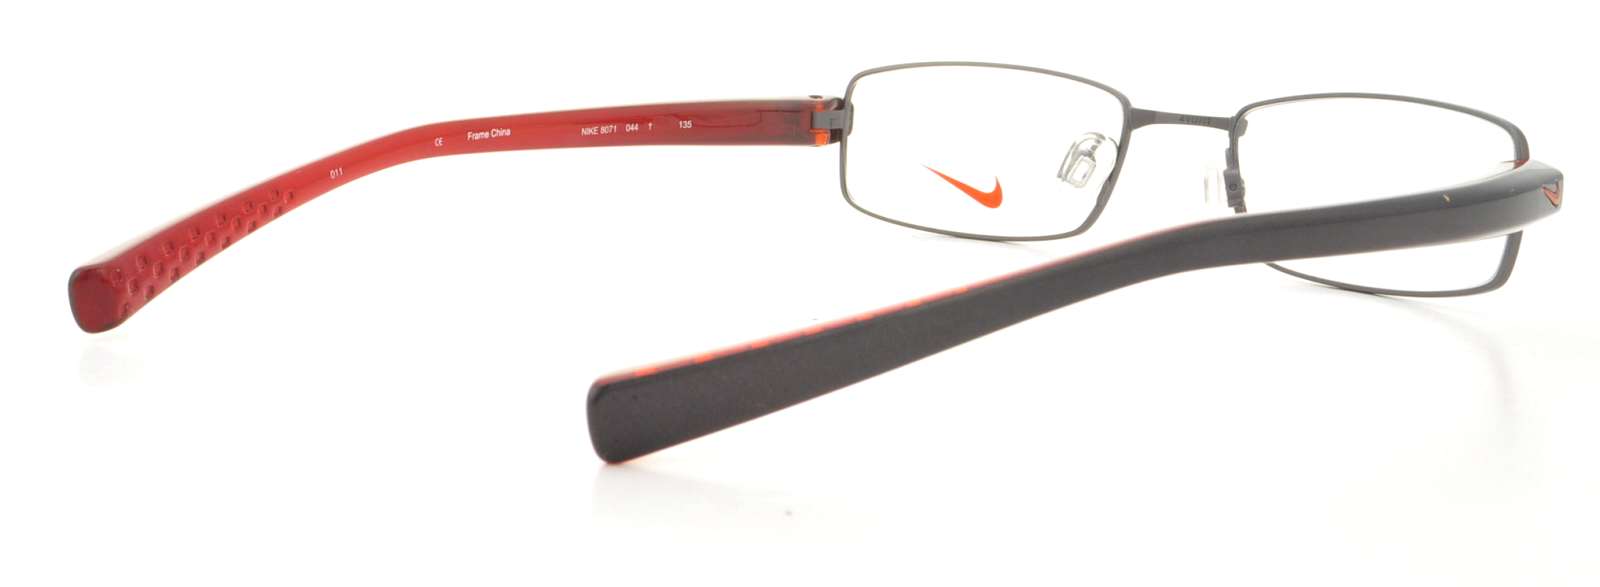 Designer Frames Outlet. Nike Eyeglasses